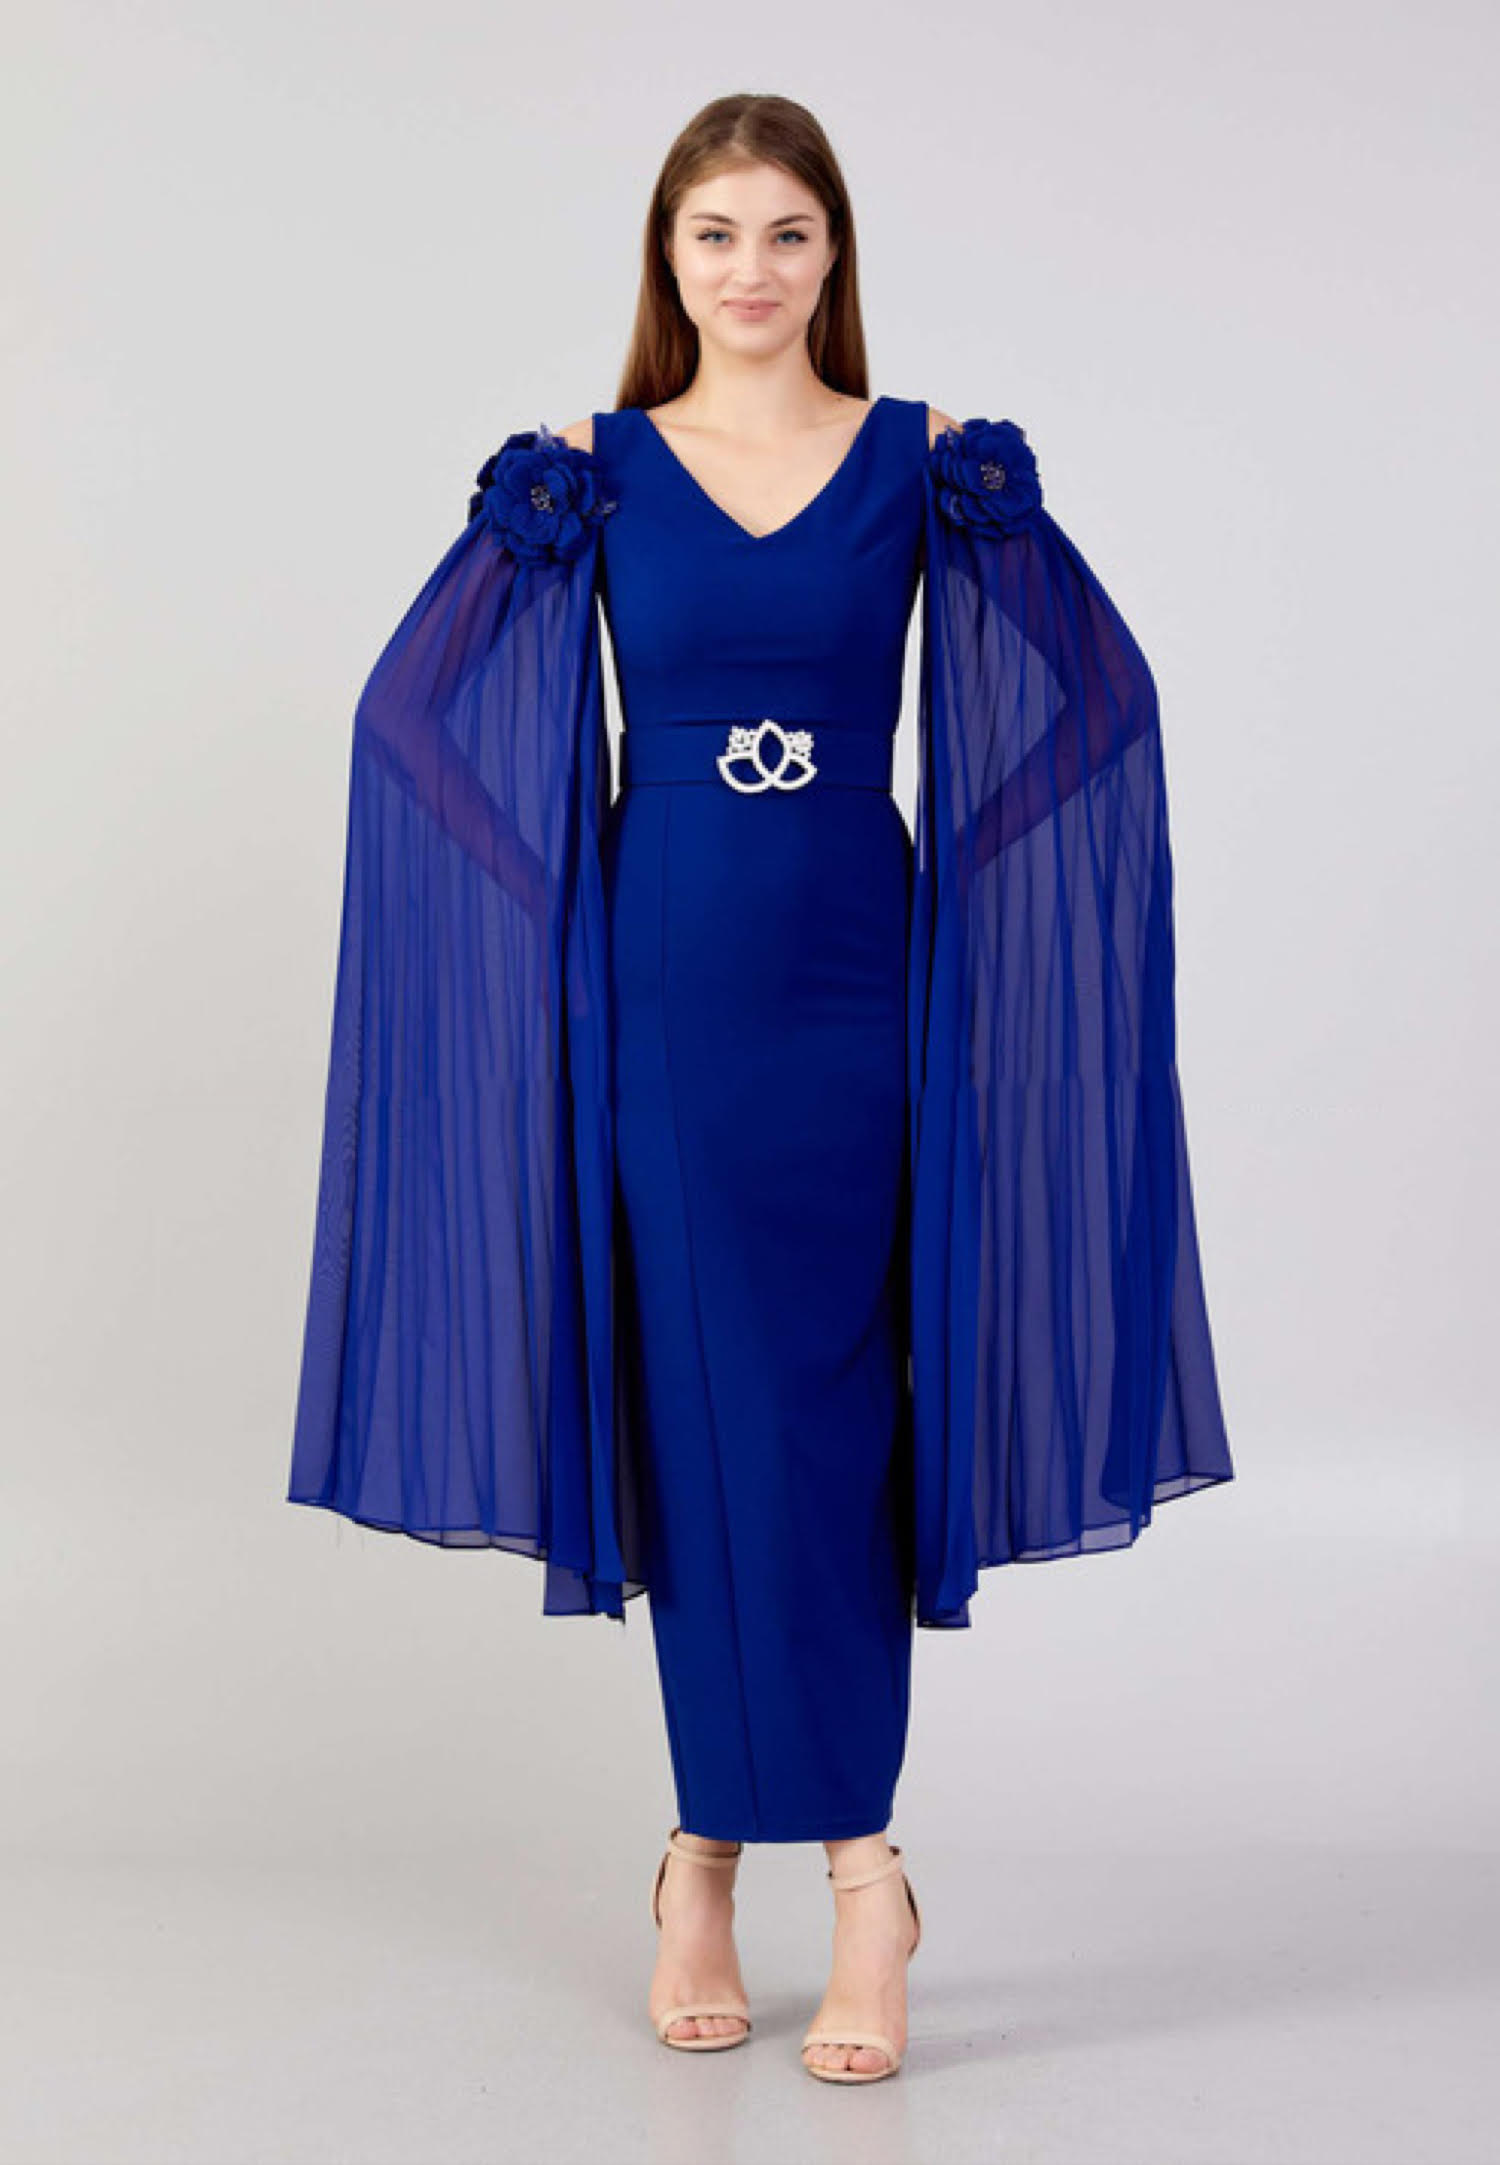 Blue Sleeveless Evening Dress